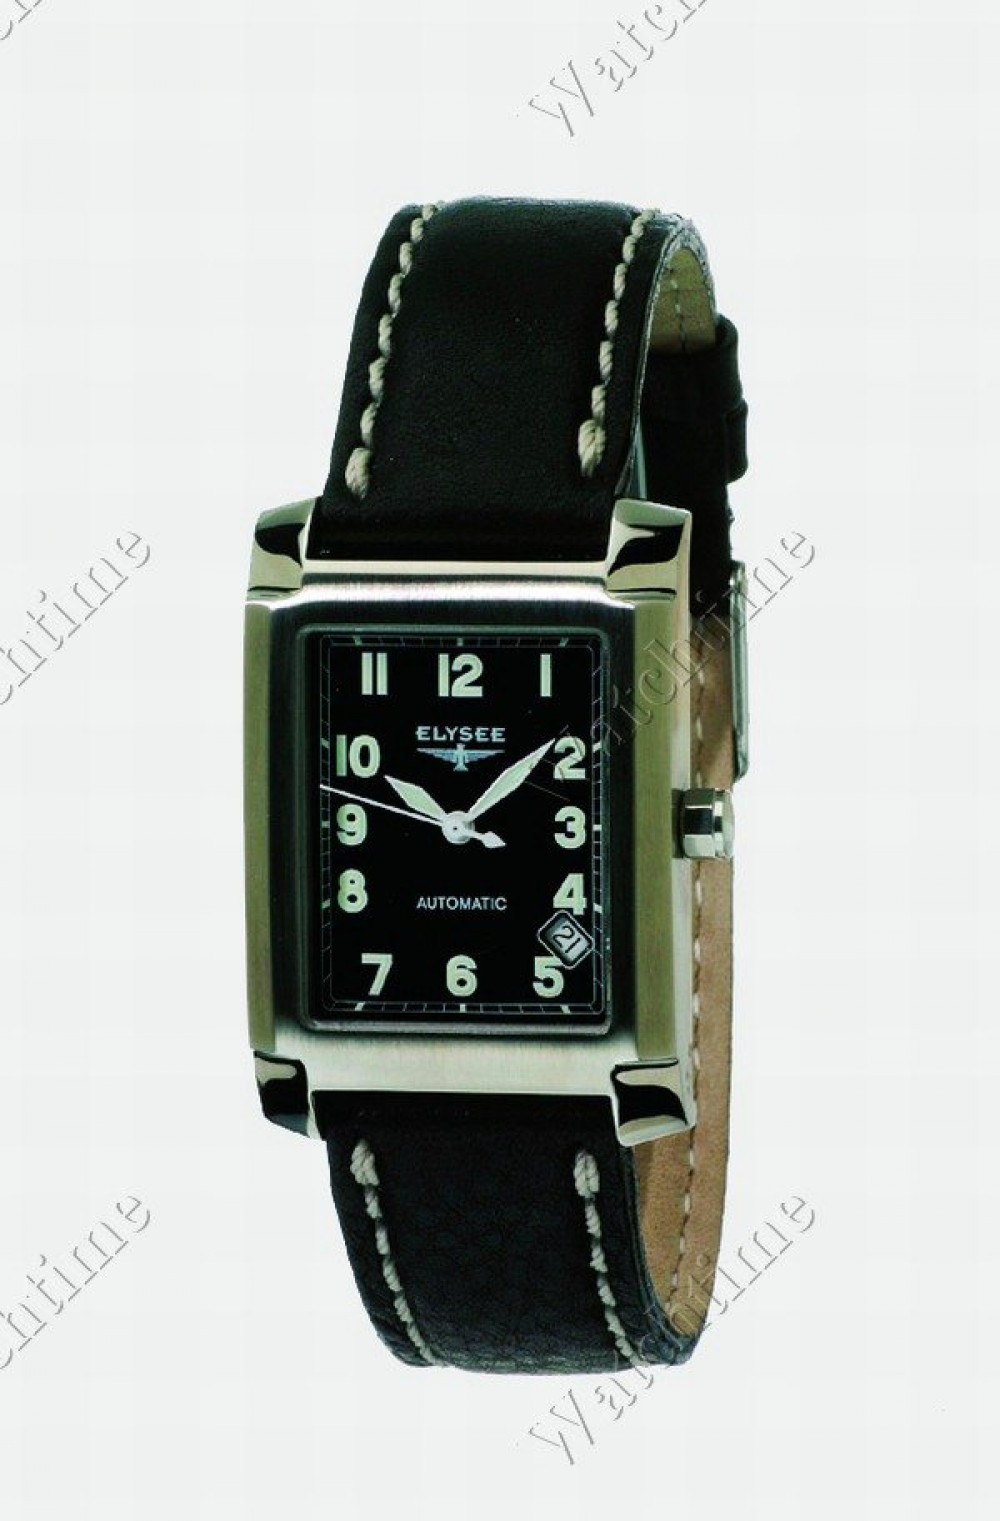 Zegarek firmy Elysee, model Artos